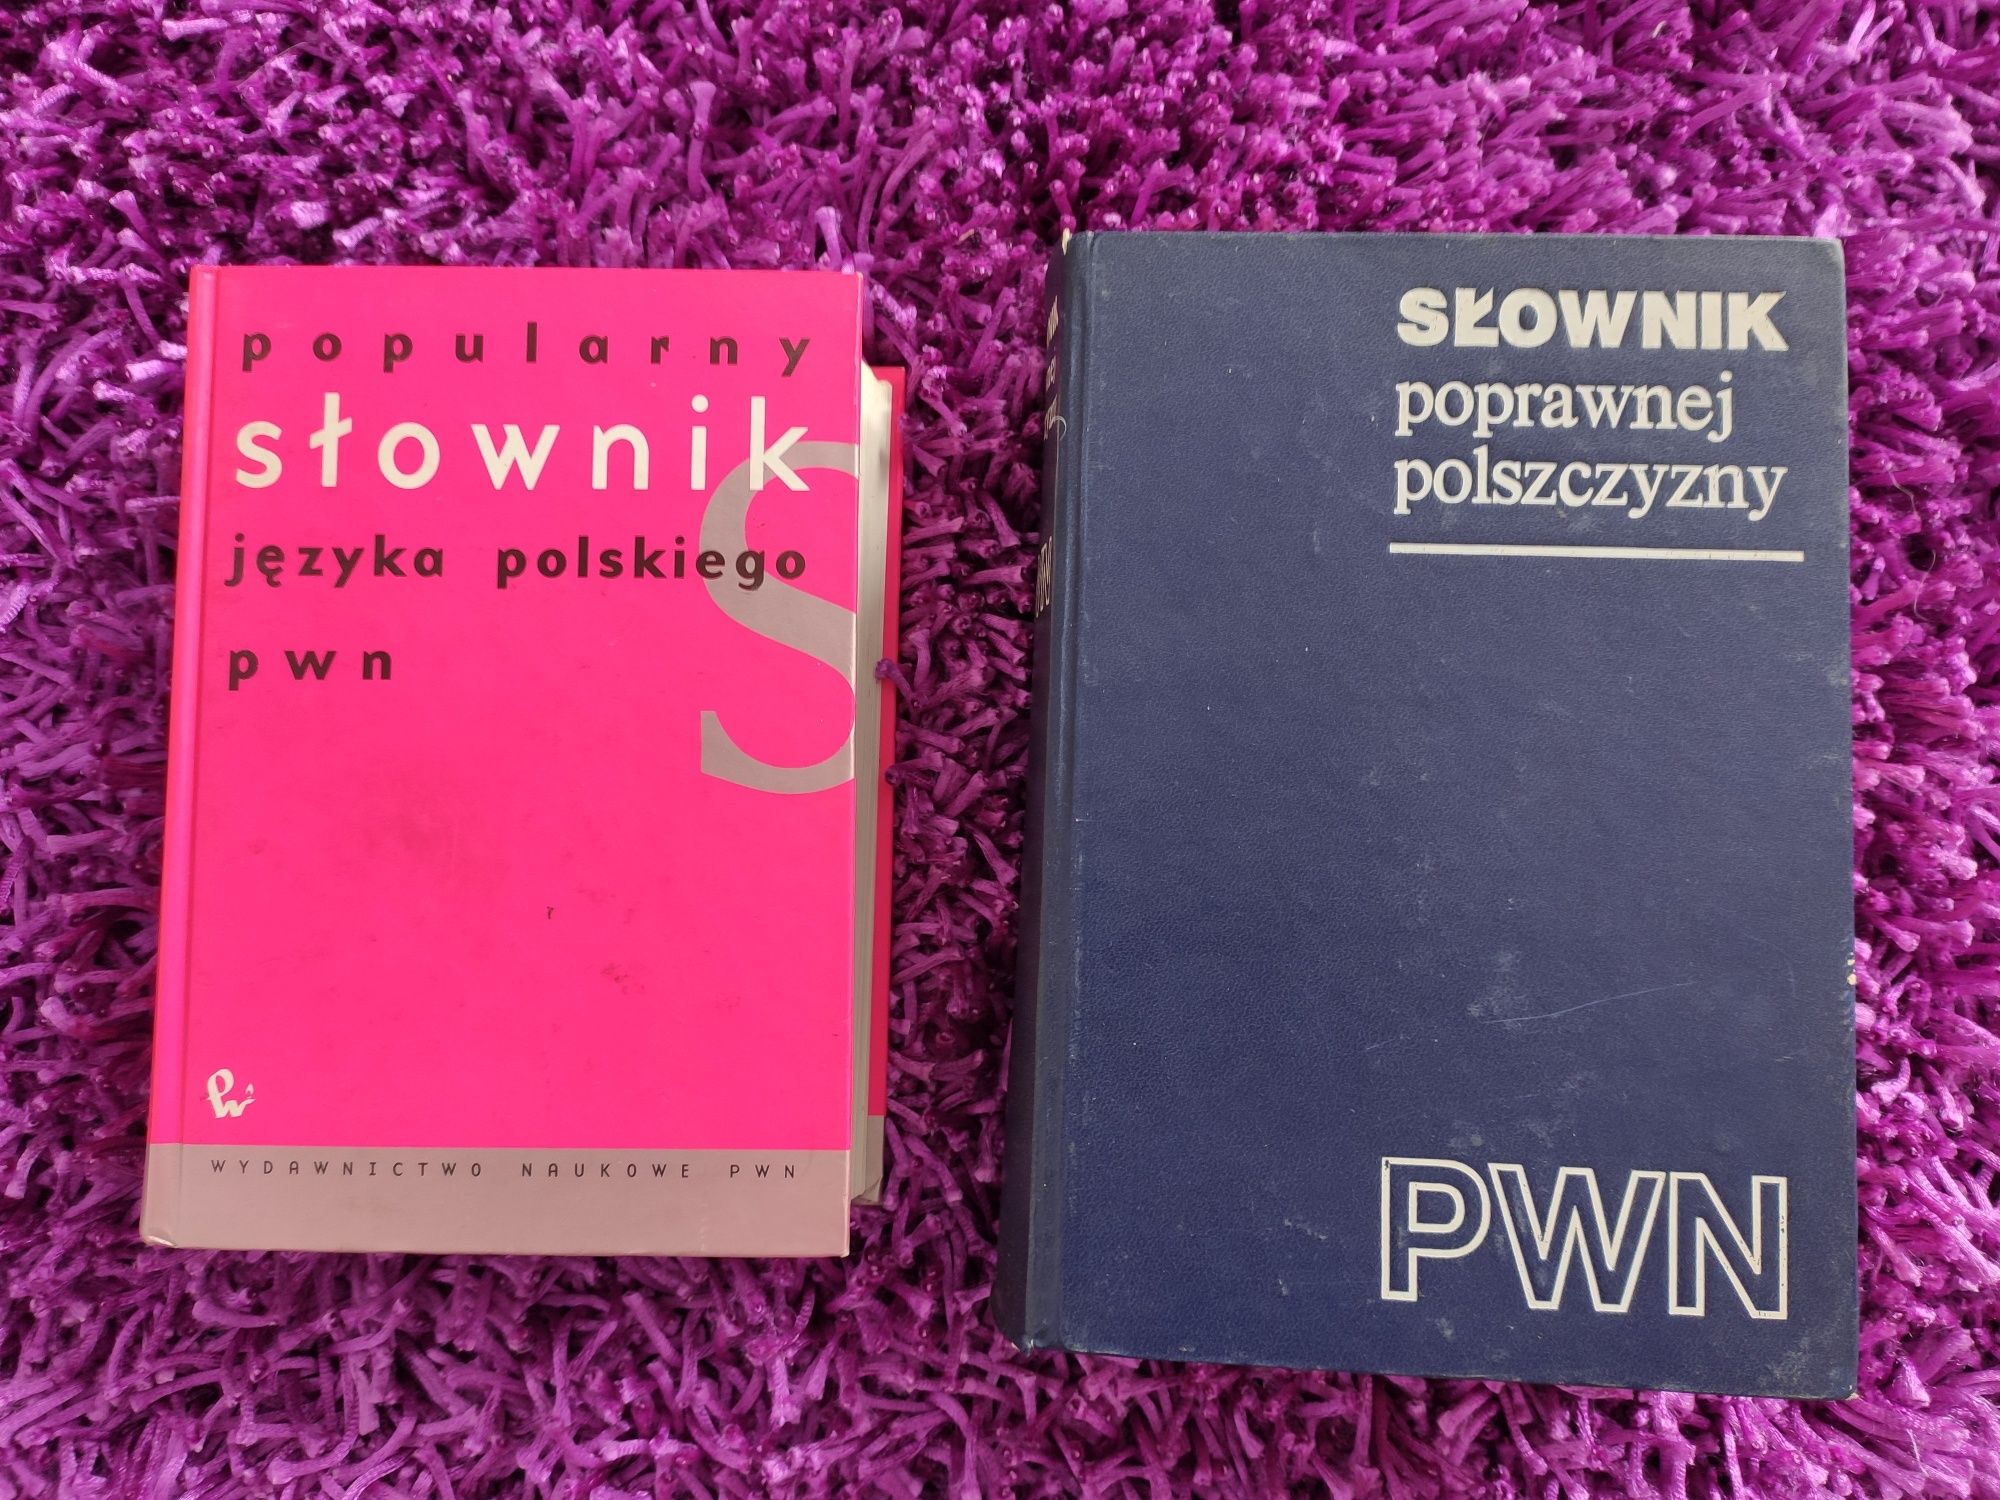 Słownik poprawnej polszczyzny 1980 i slownik języka polskiego PWN